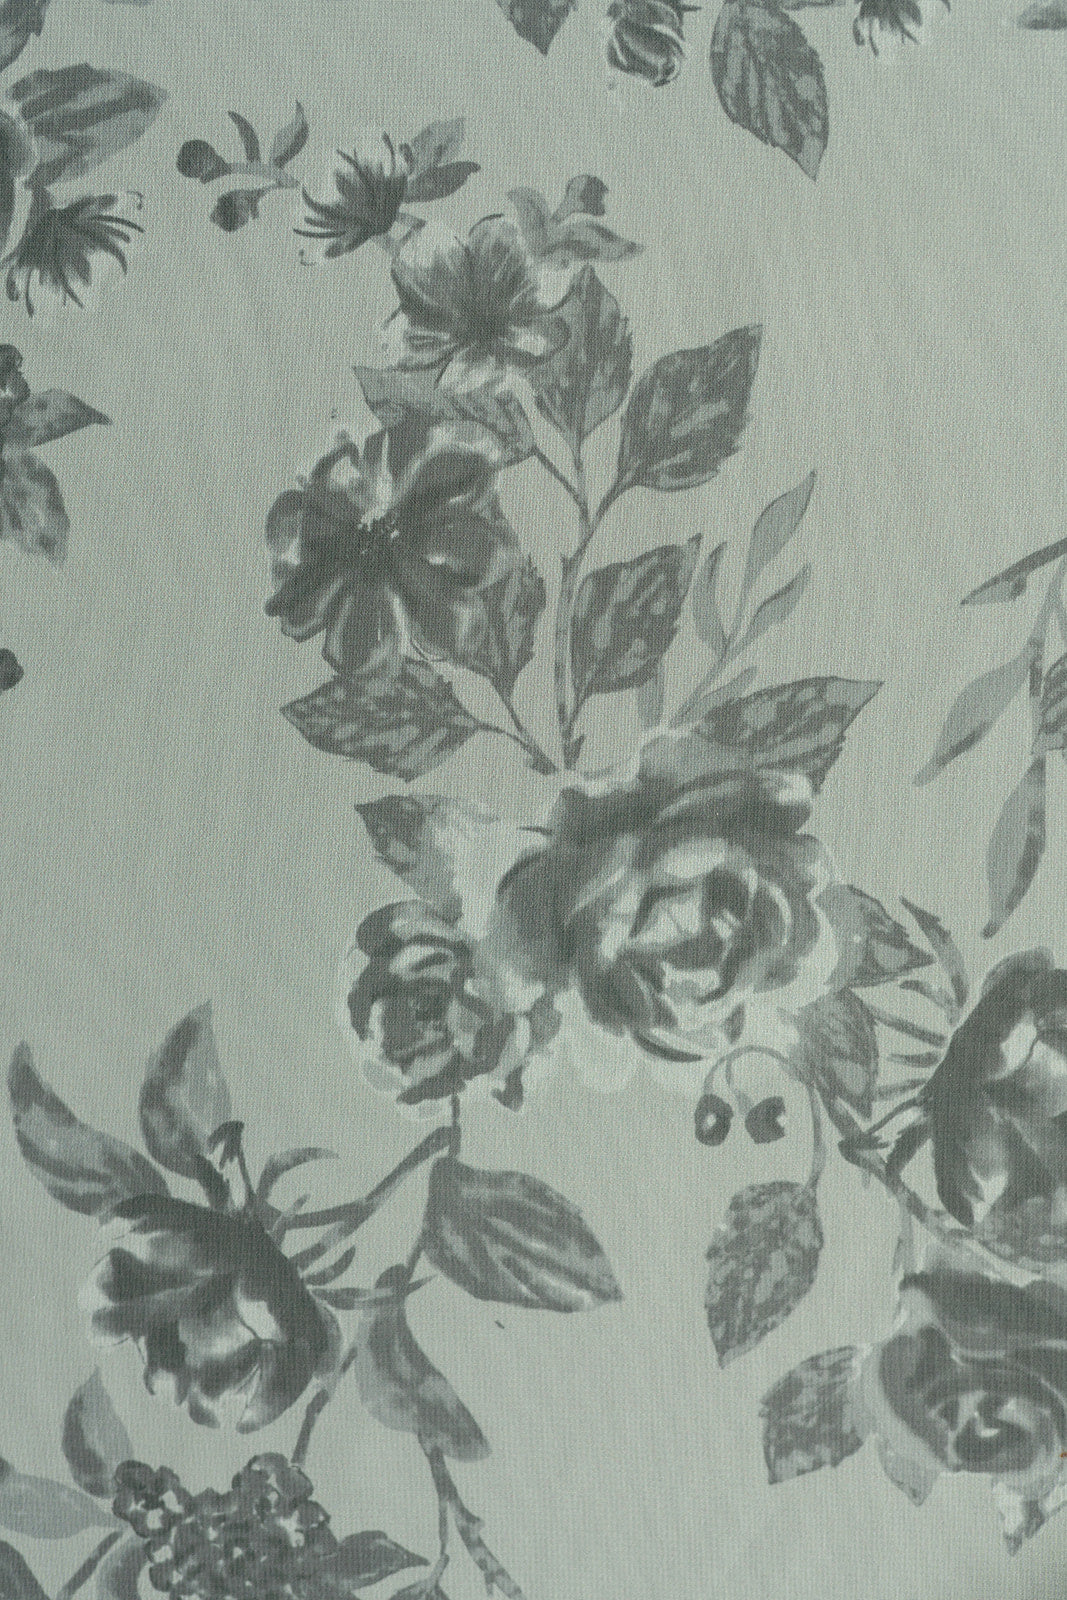 Chiffon Floral Print Fabric By Yard